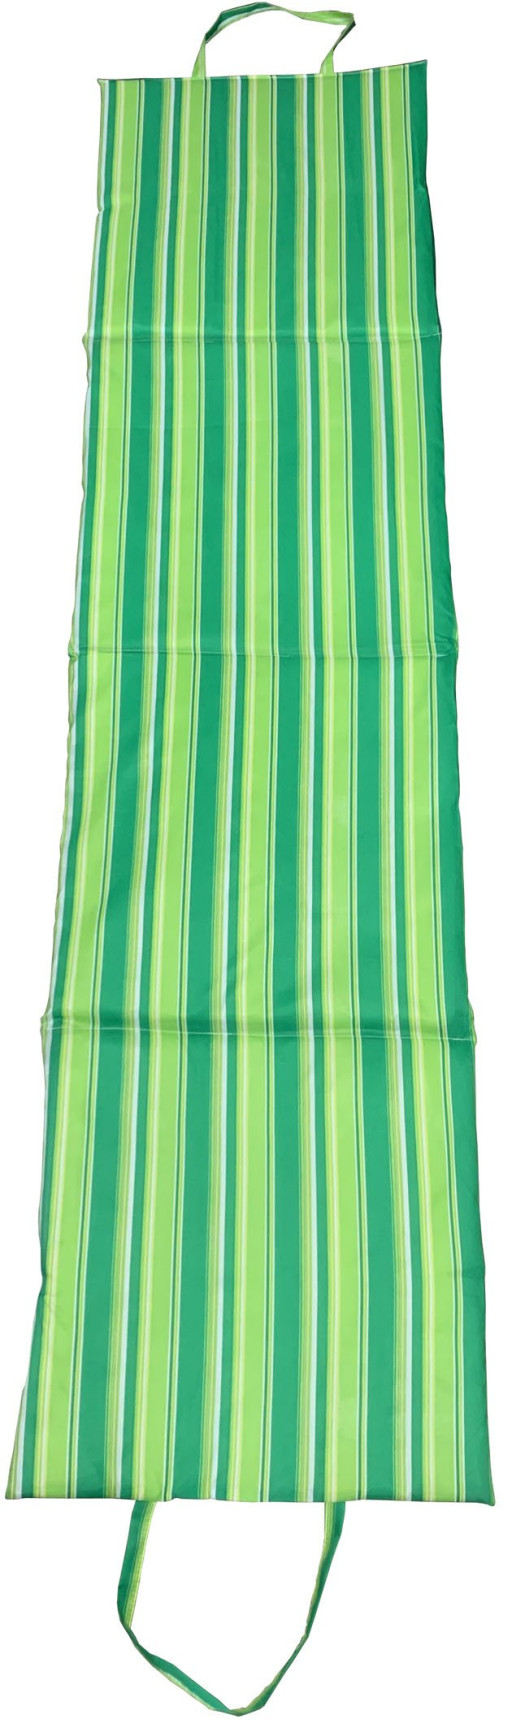 Skládací plážové lehátko Zelené, 180 x 50 x 1,5 cm